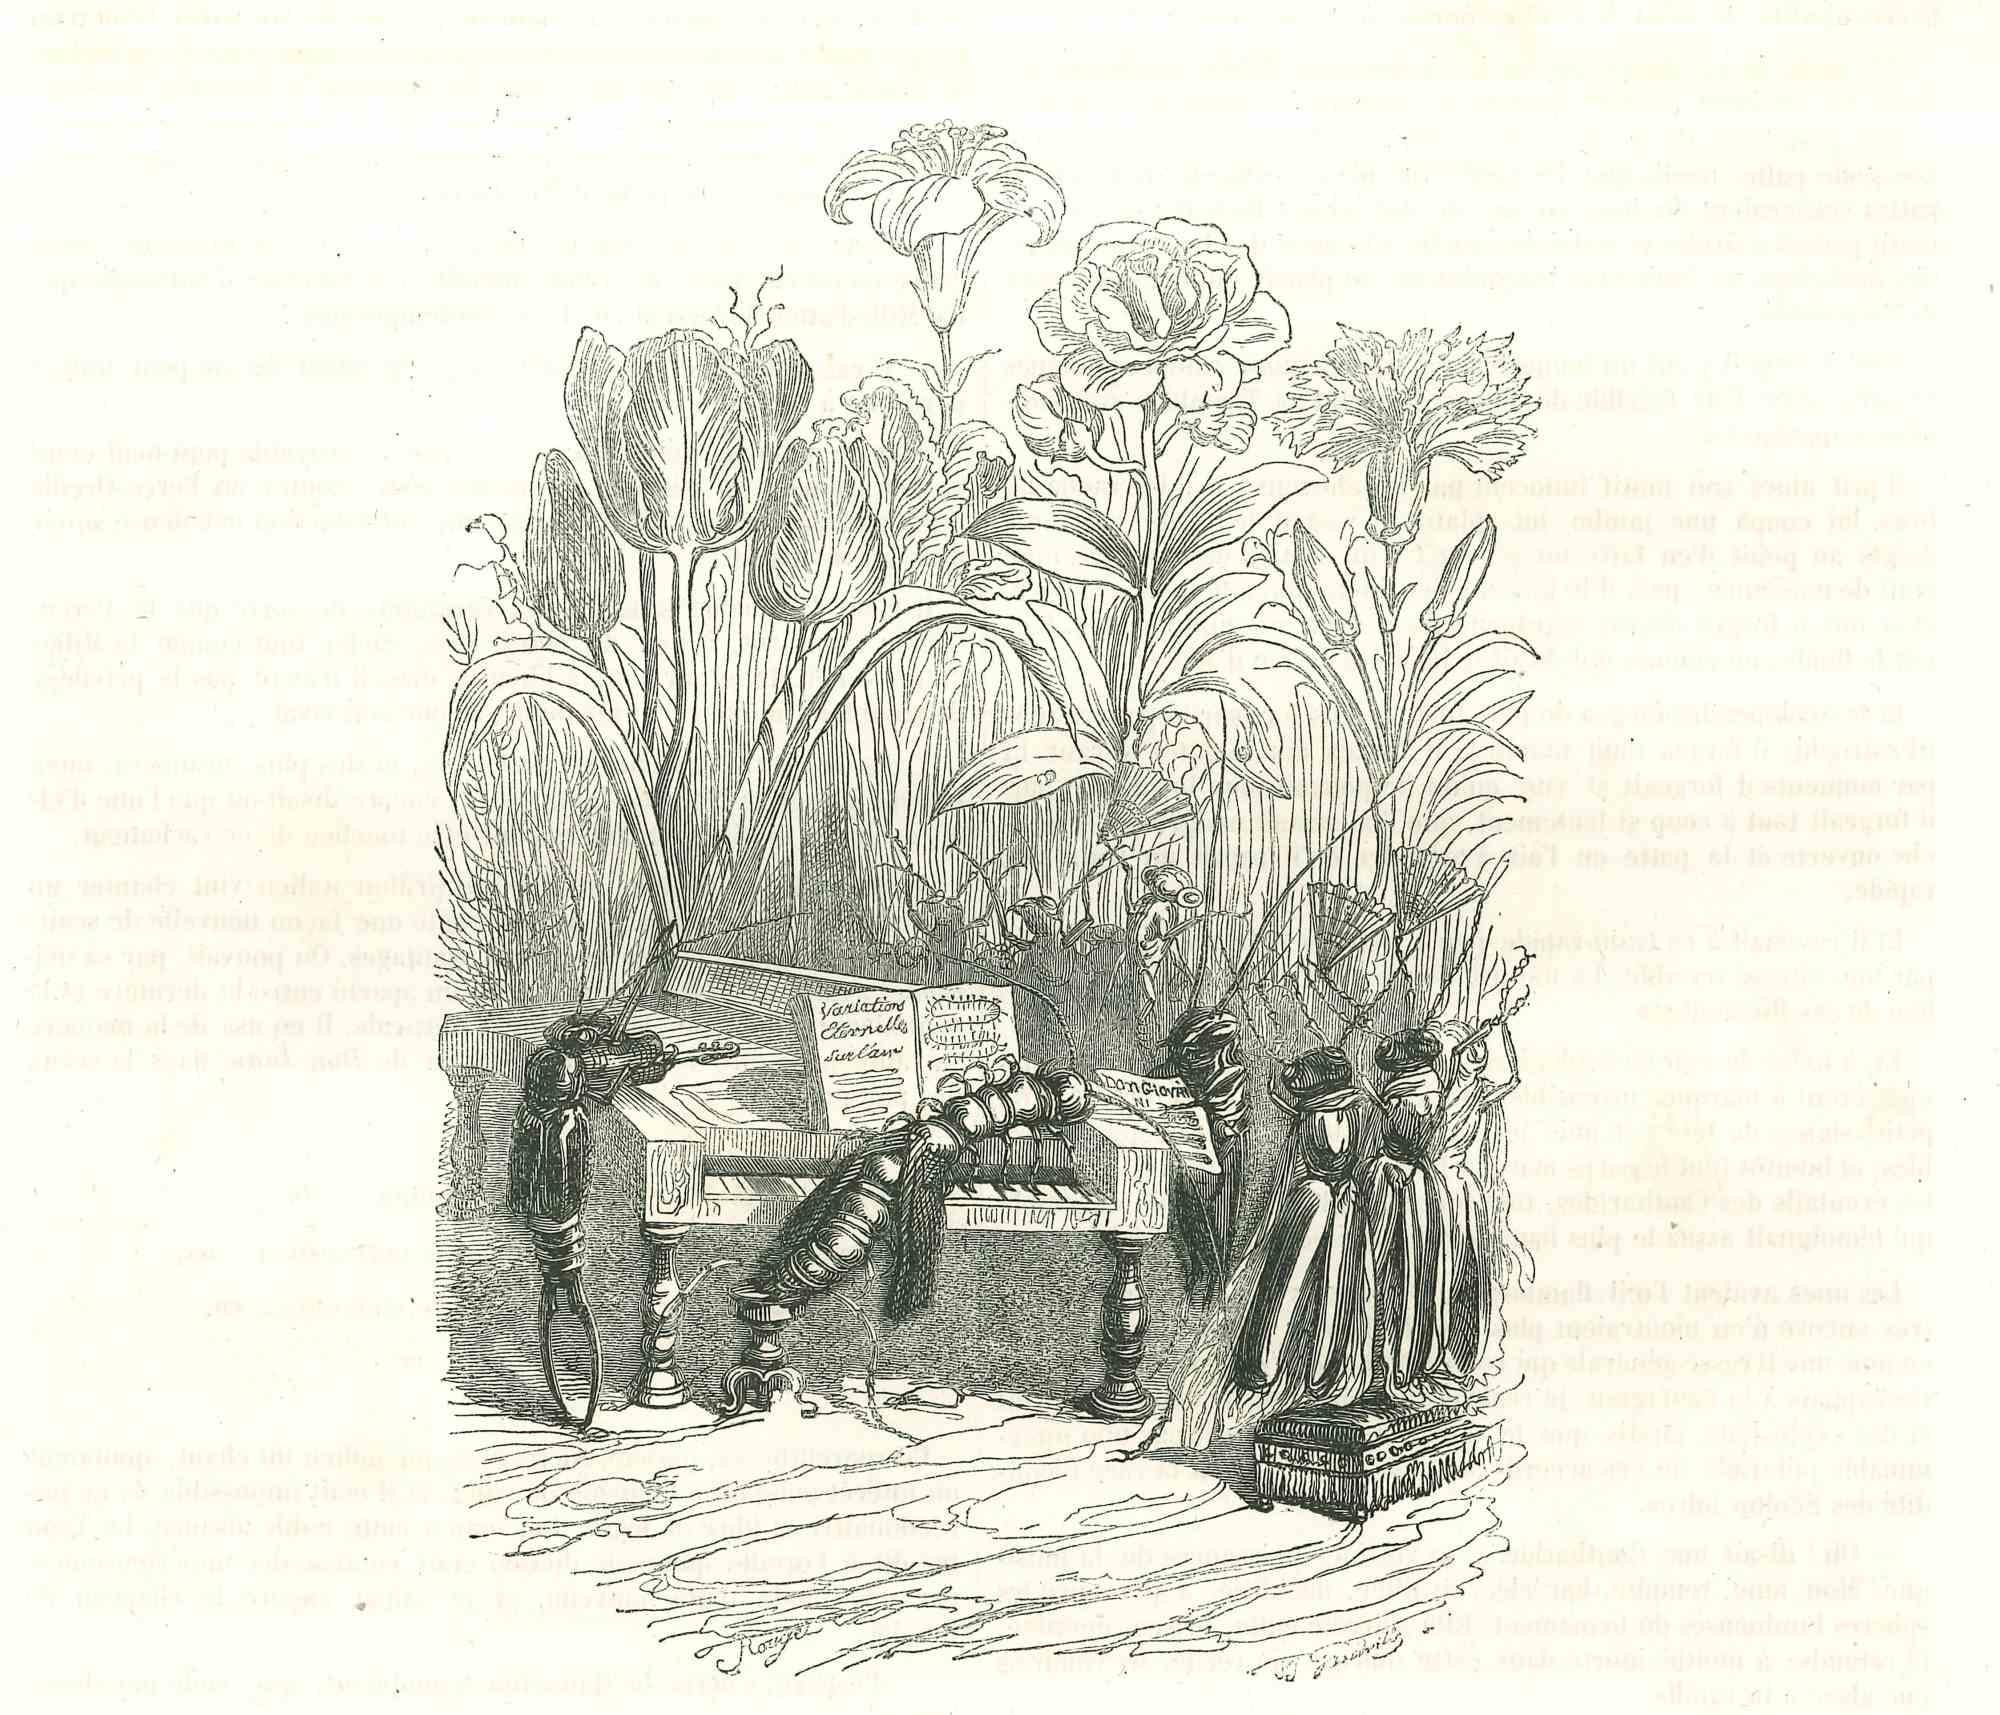 Le Concert d'Insectes entre les Roses est une lithographie originale sur papier couleur ivoire réalisée par J.J. Grandville, extrait de Scènes de la vie privée et publique des animaux, 1852. Publié par Manesq & Harvard, Paris. 

Signé sur la